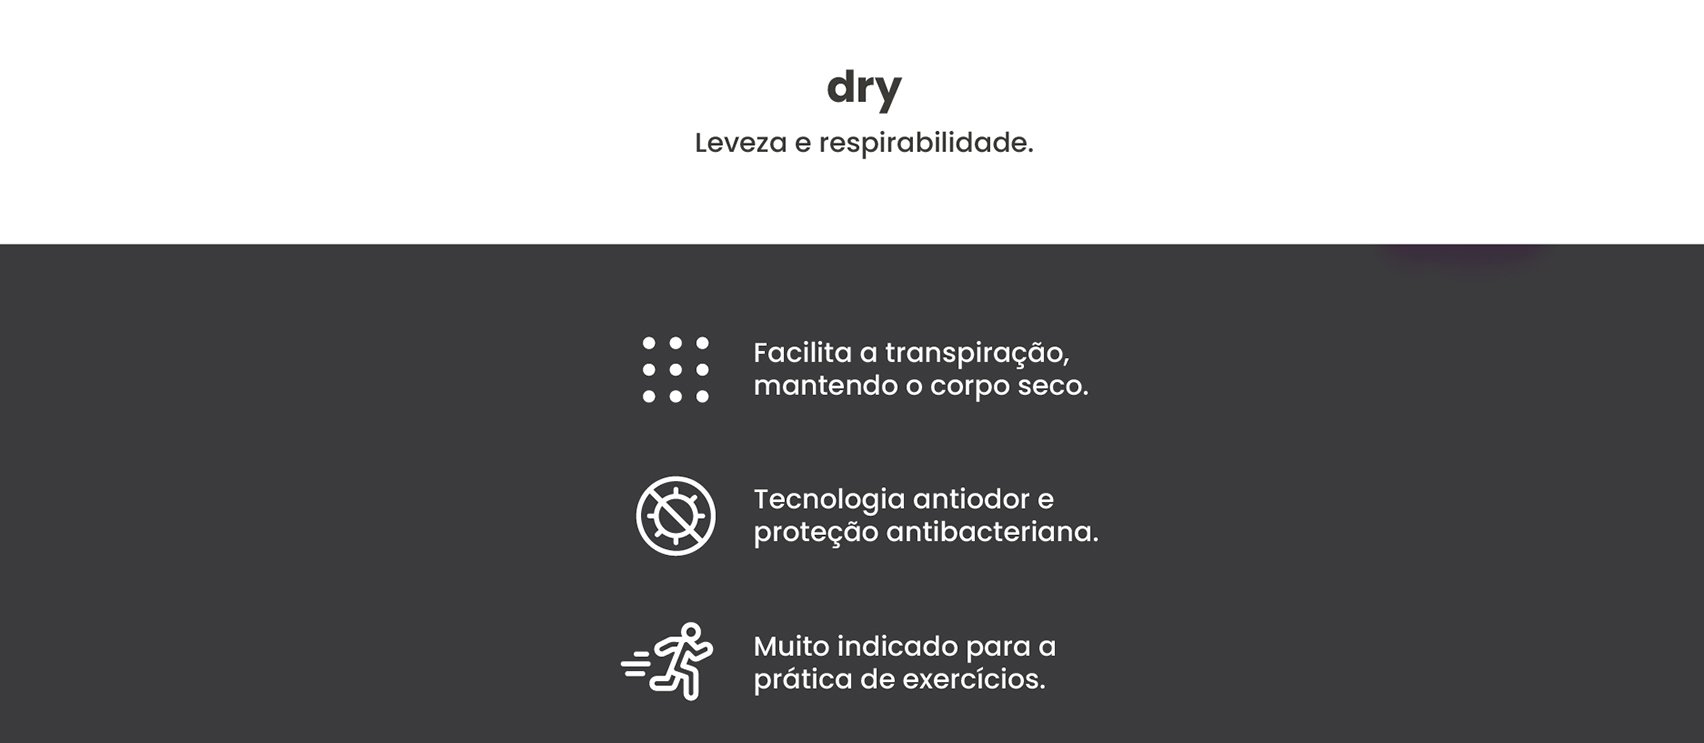 4-atributos-dry-1